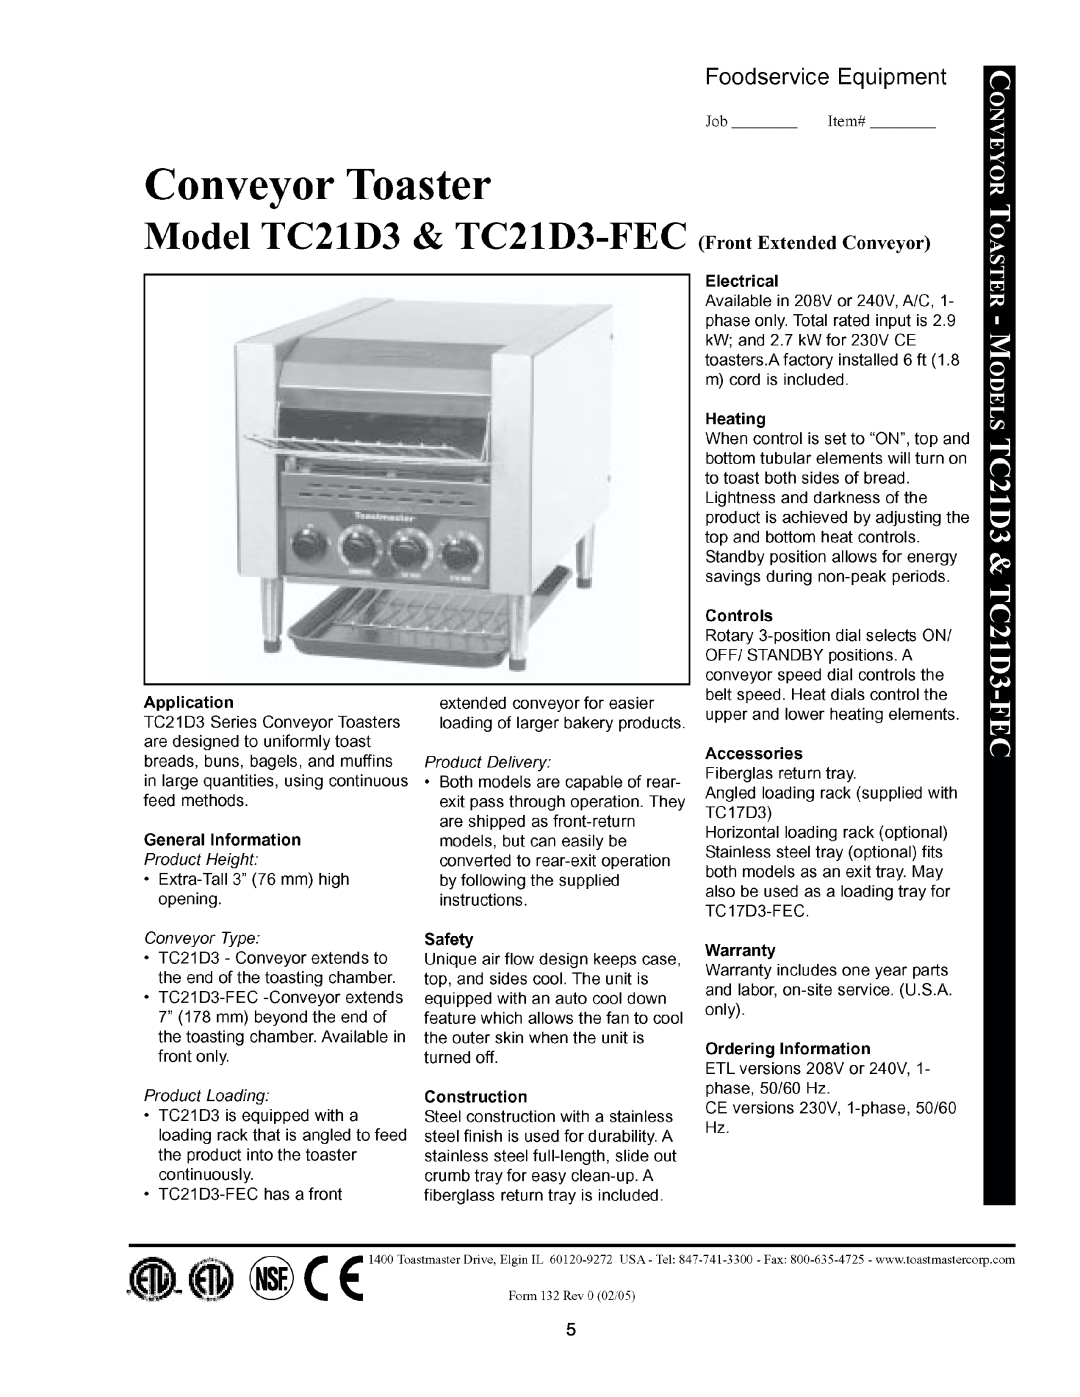 Toastmaster TC17D3663-208V, TC21D3 FEC 663-208V, TC21D3663-208V, TC17D3 FEC 666-240V, TC17D3 FEC 663-208V, TC17D3674-120V manual 